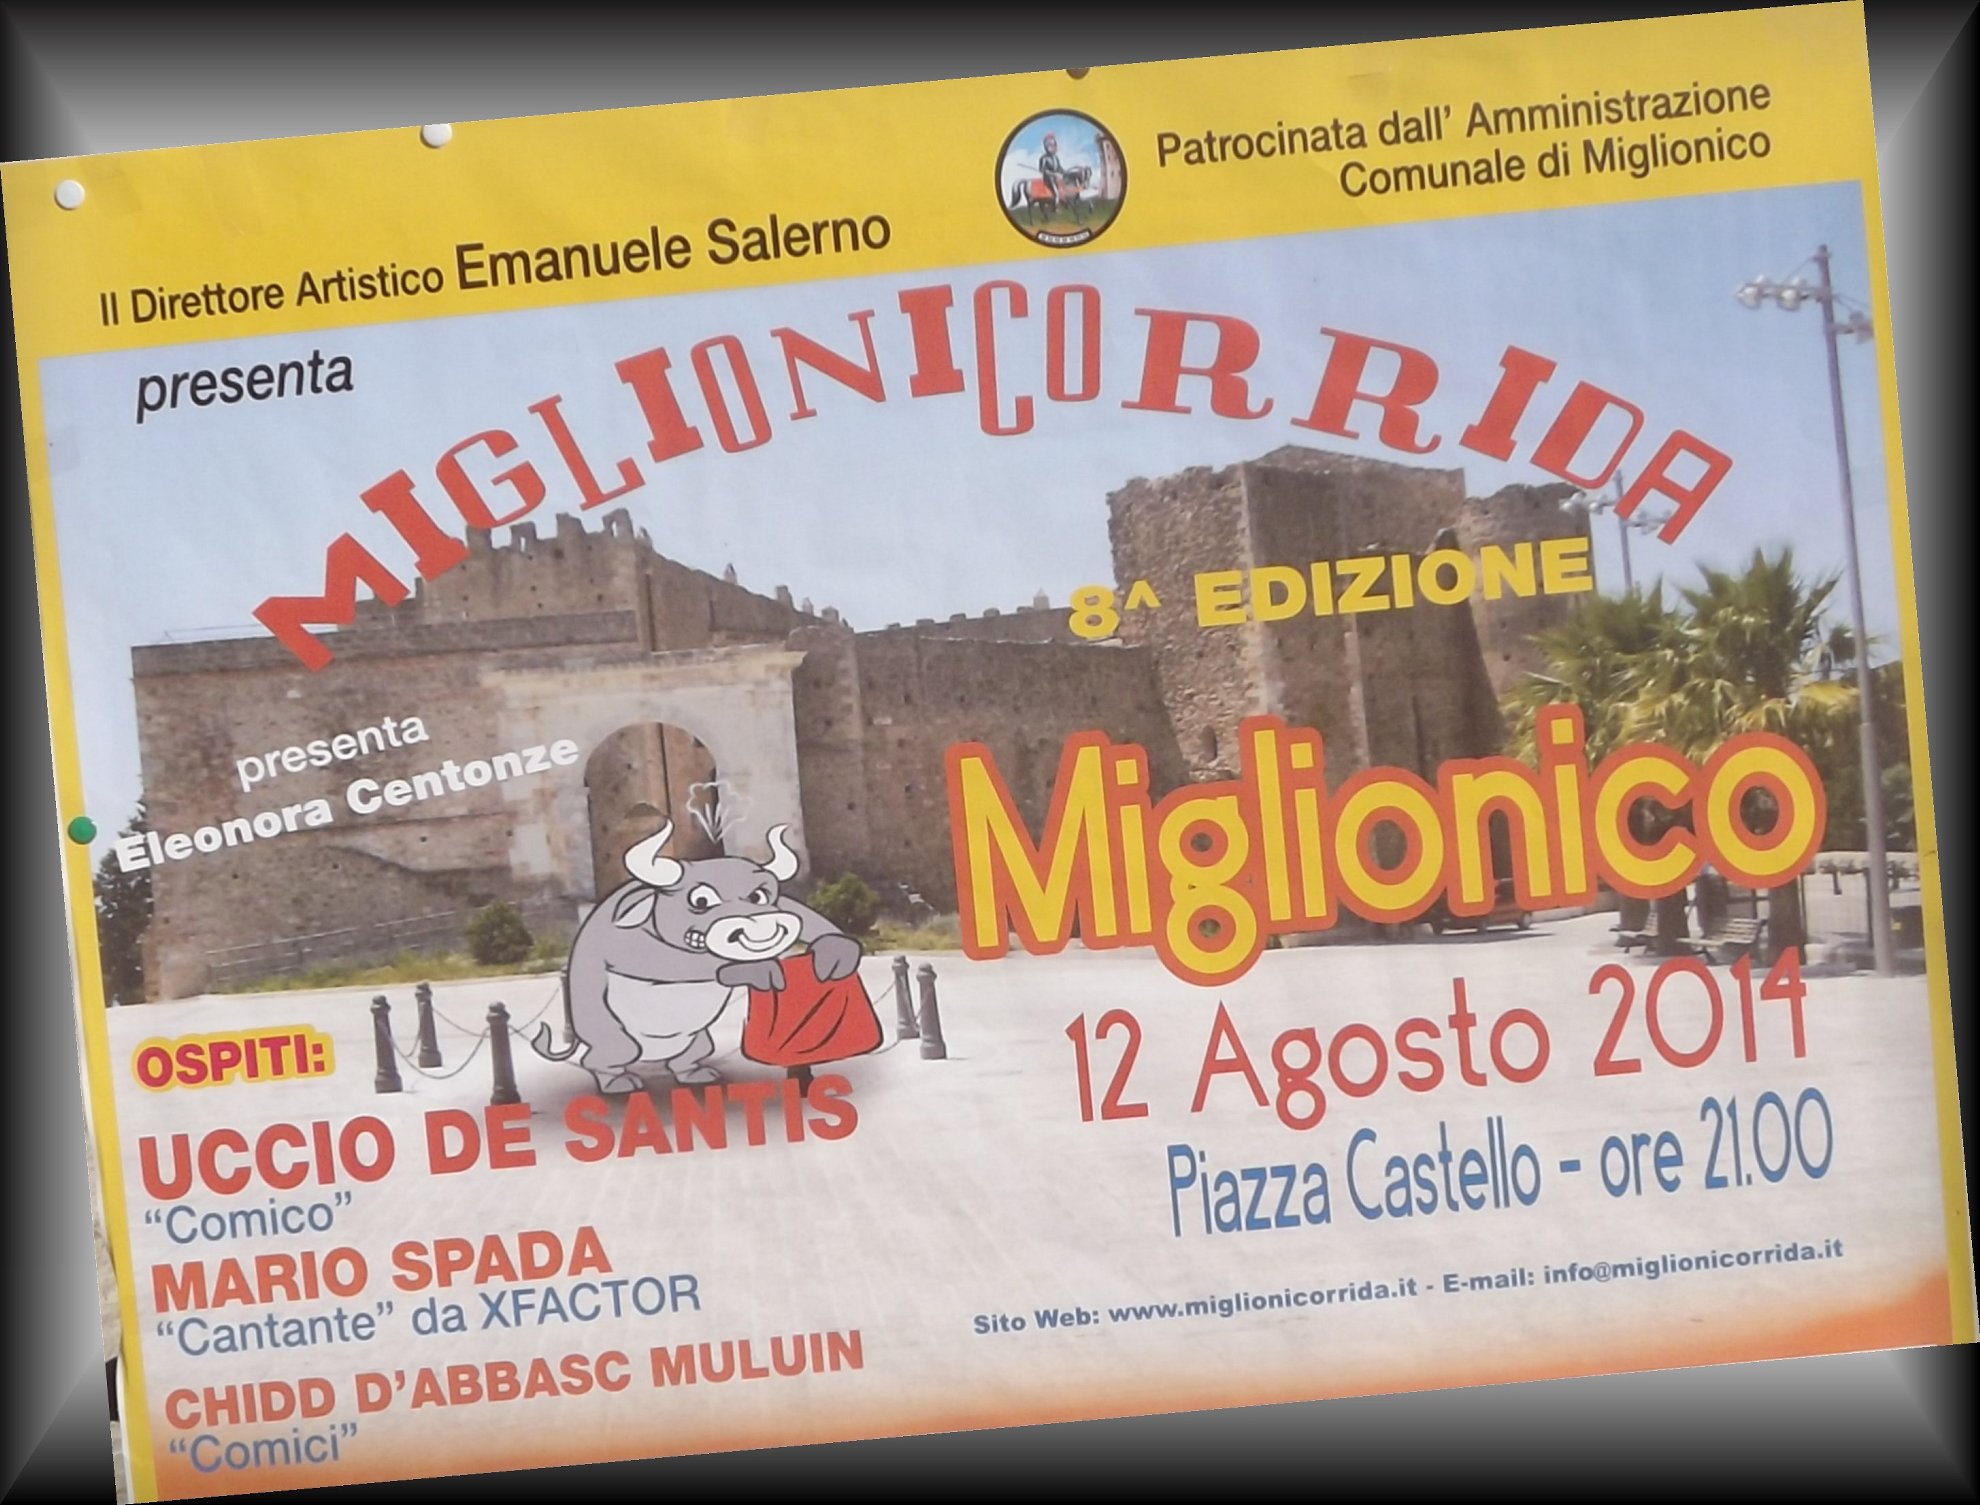 Cartellone estivo "SeRestate a.. MIGLIONICO"  con la MIGLIONICORRIDA organizzata dal direttore artistico Emanuele Salerno